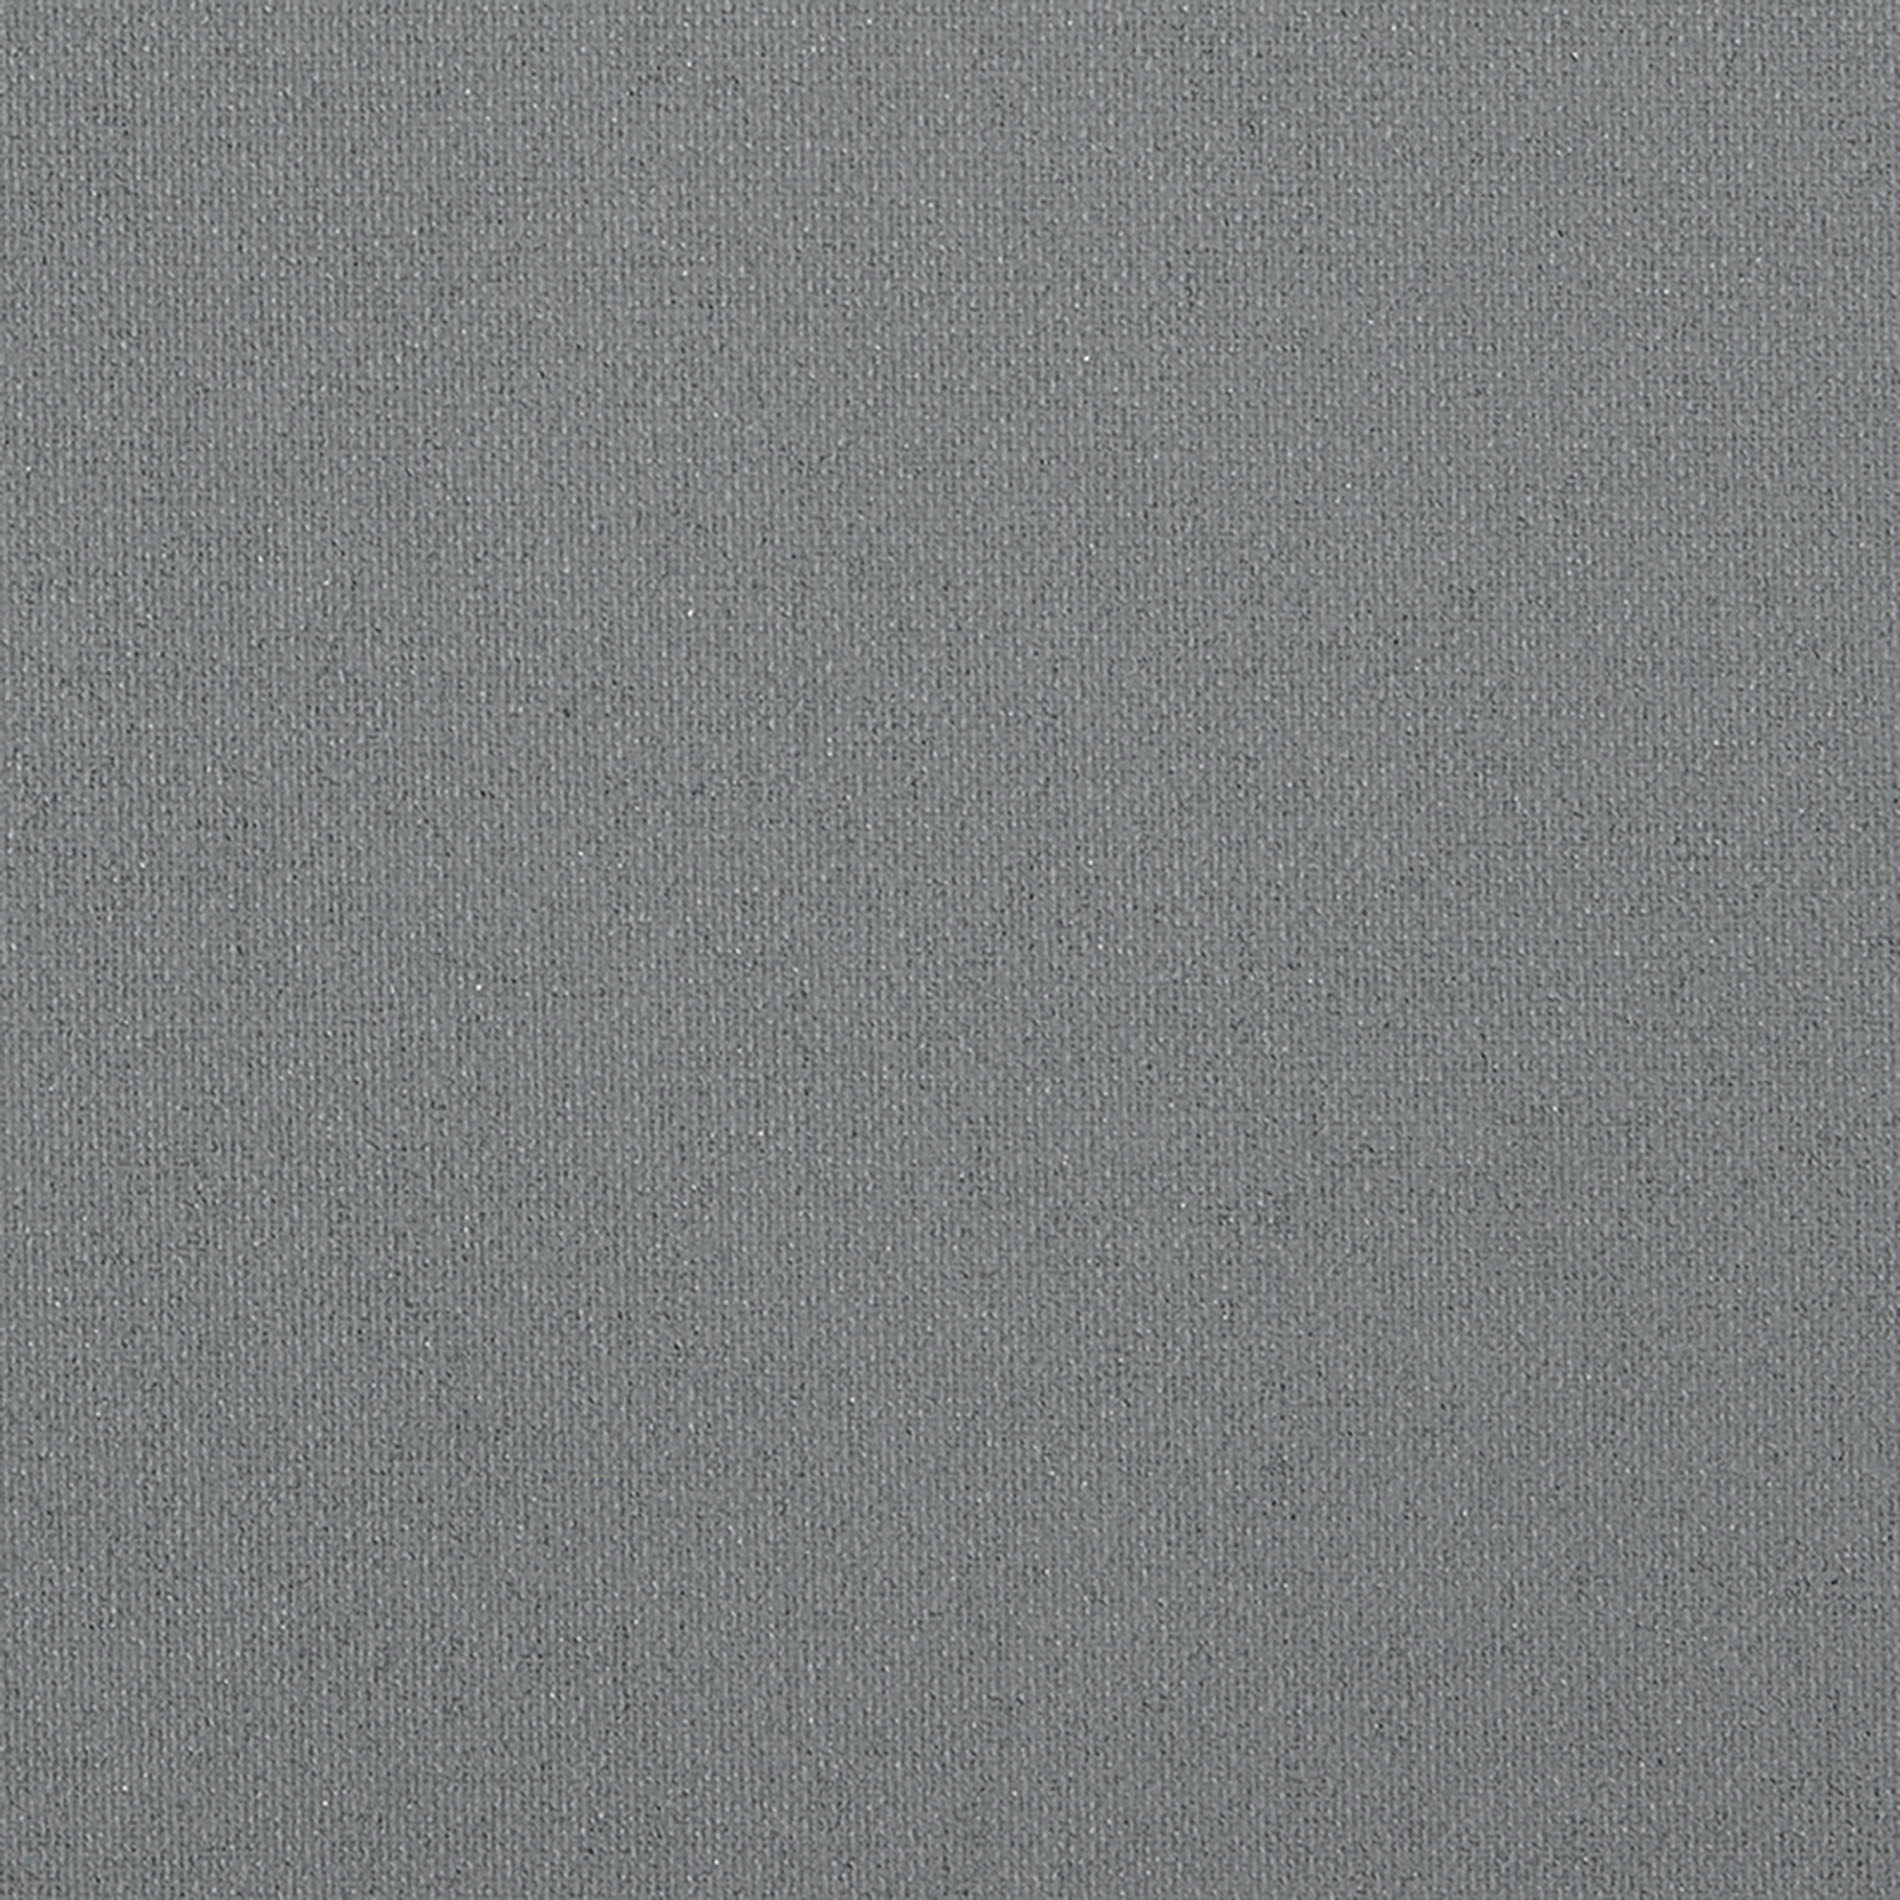 Altex - Fabric - COBALT - Steel Grey - COBALT04